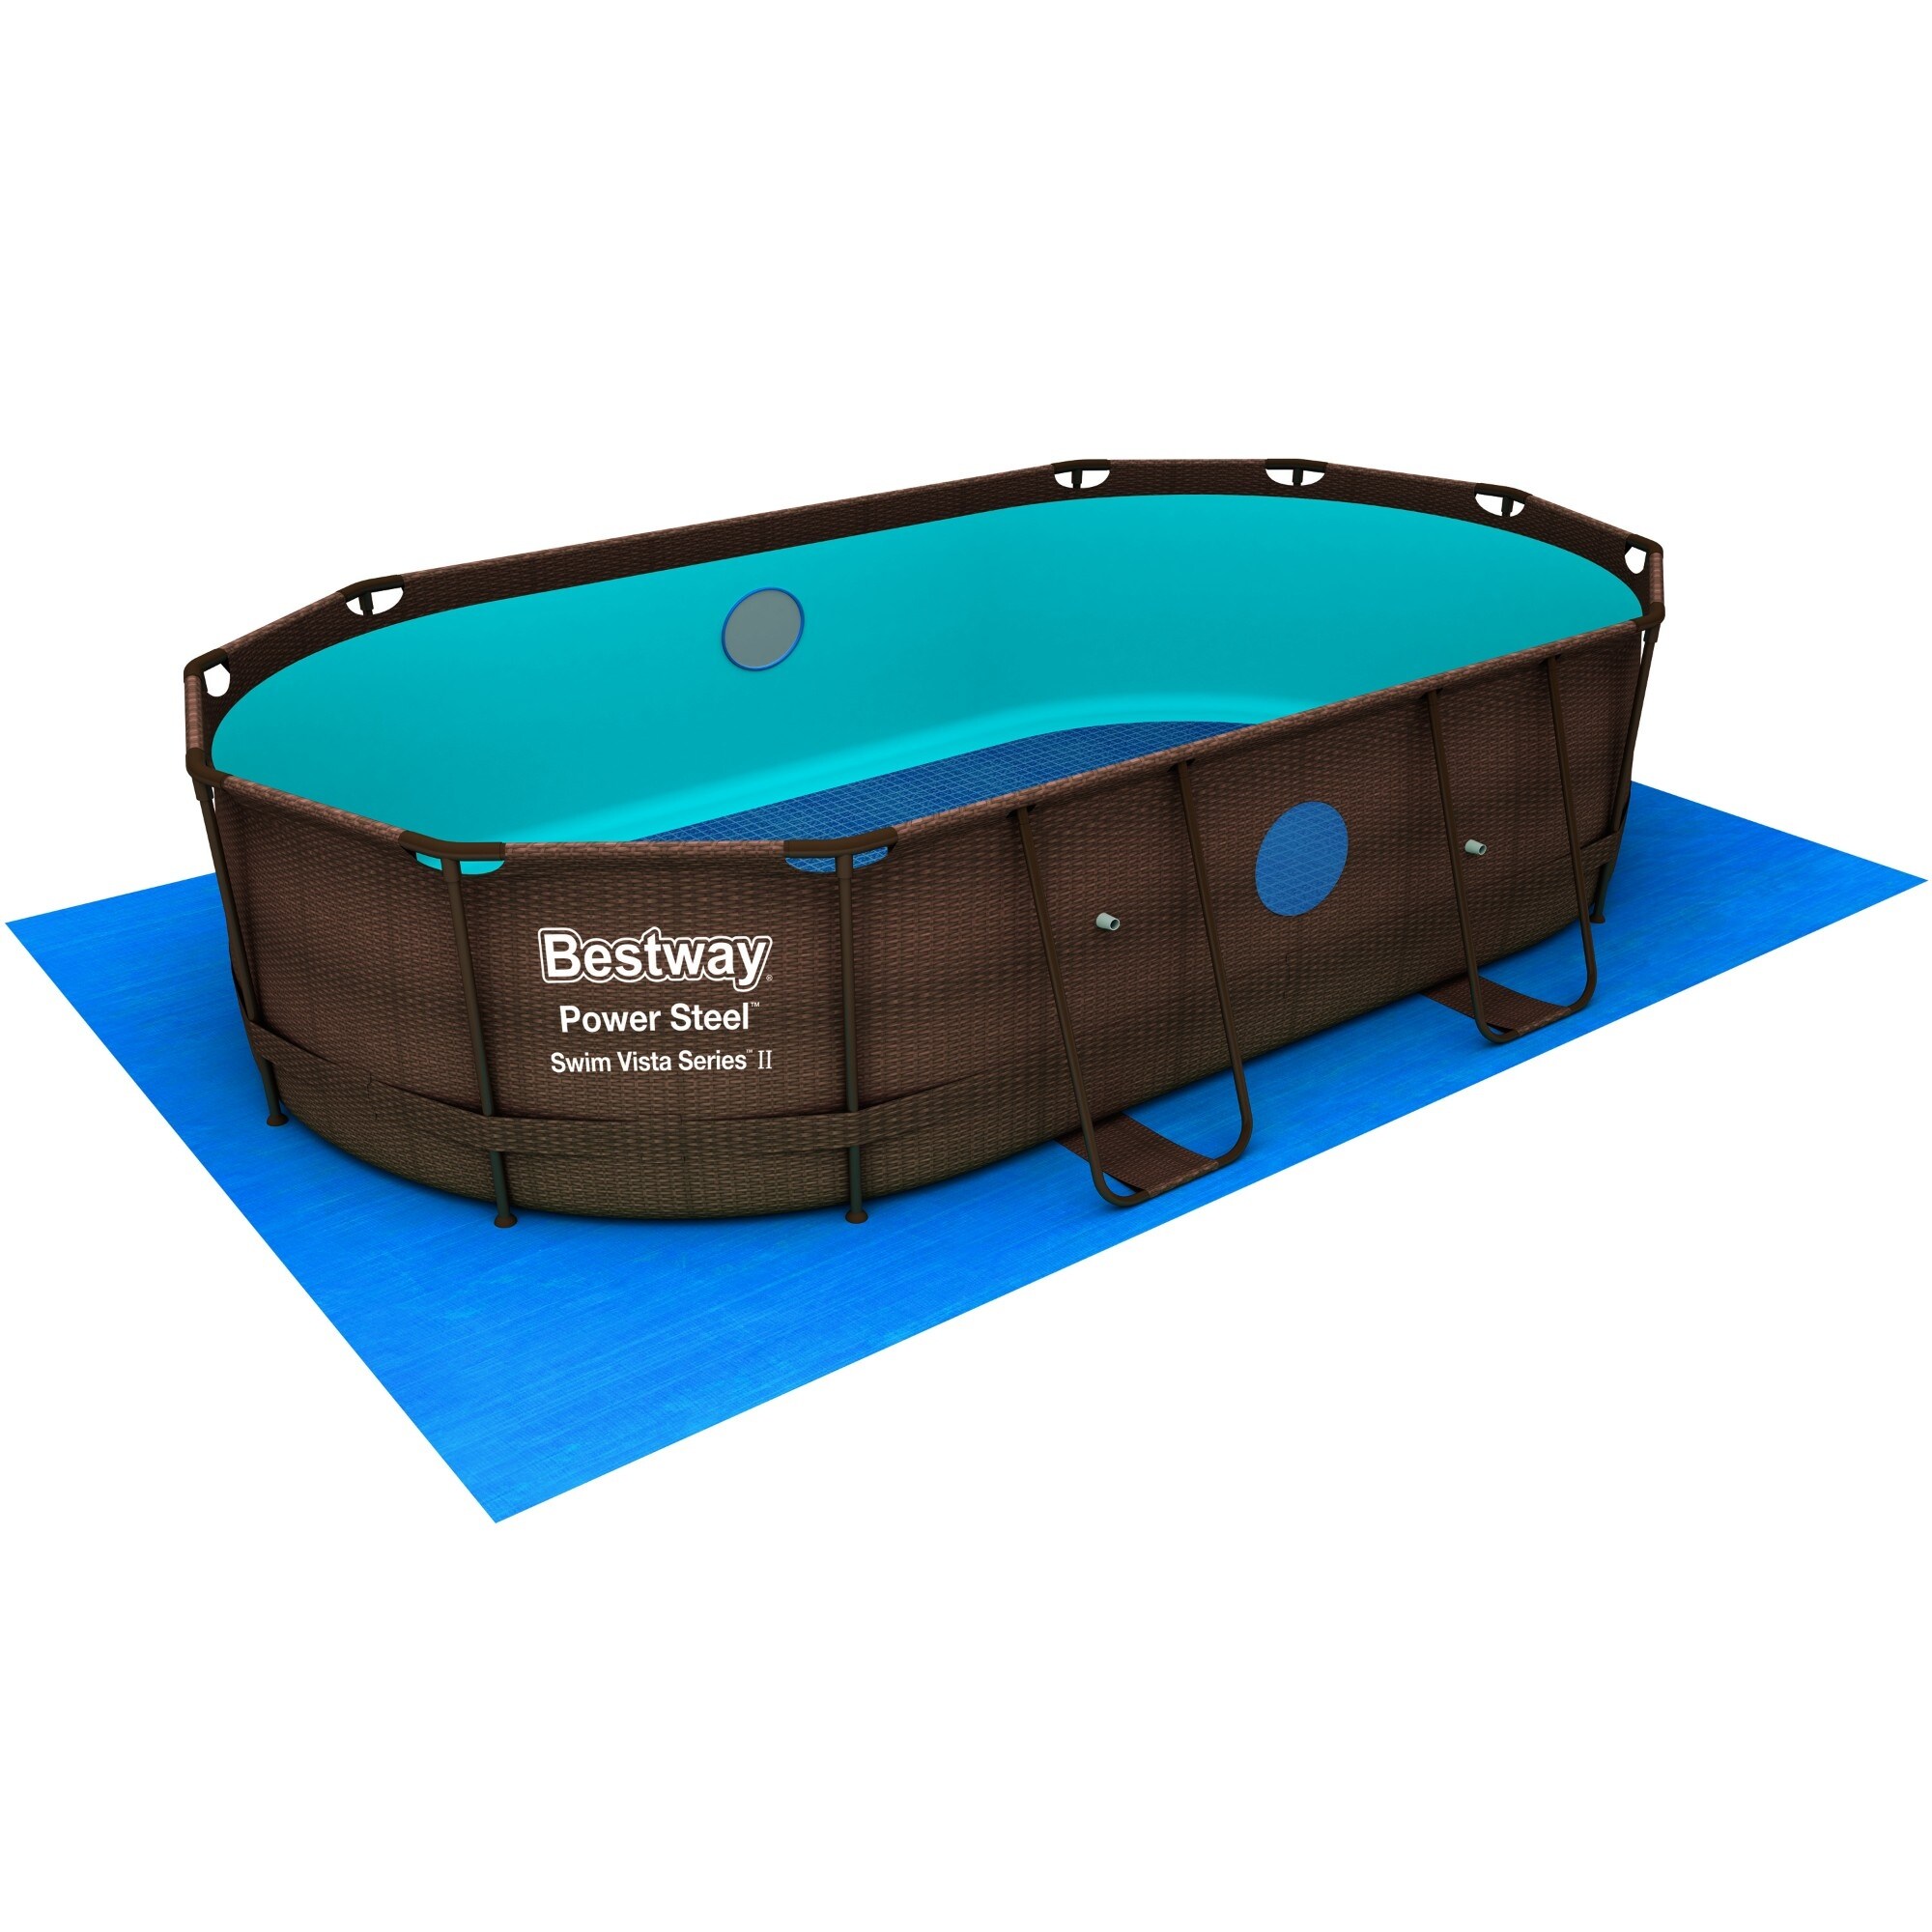 Bestway Power Pool Oval & ft Bath ft Bed x Steel 2 14 39.5 Beyond in 8 35796620 - in - Series x Swim Set Vista